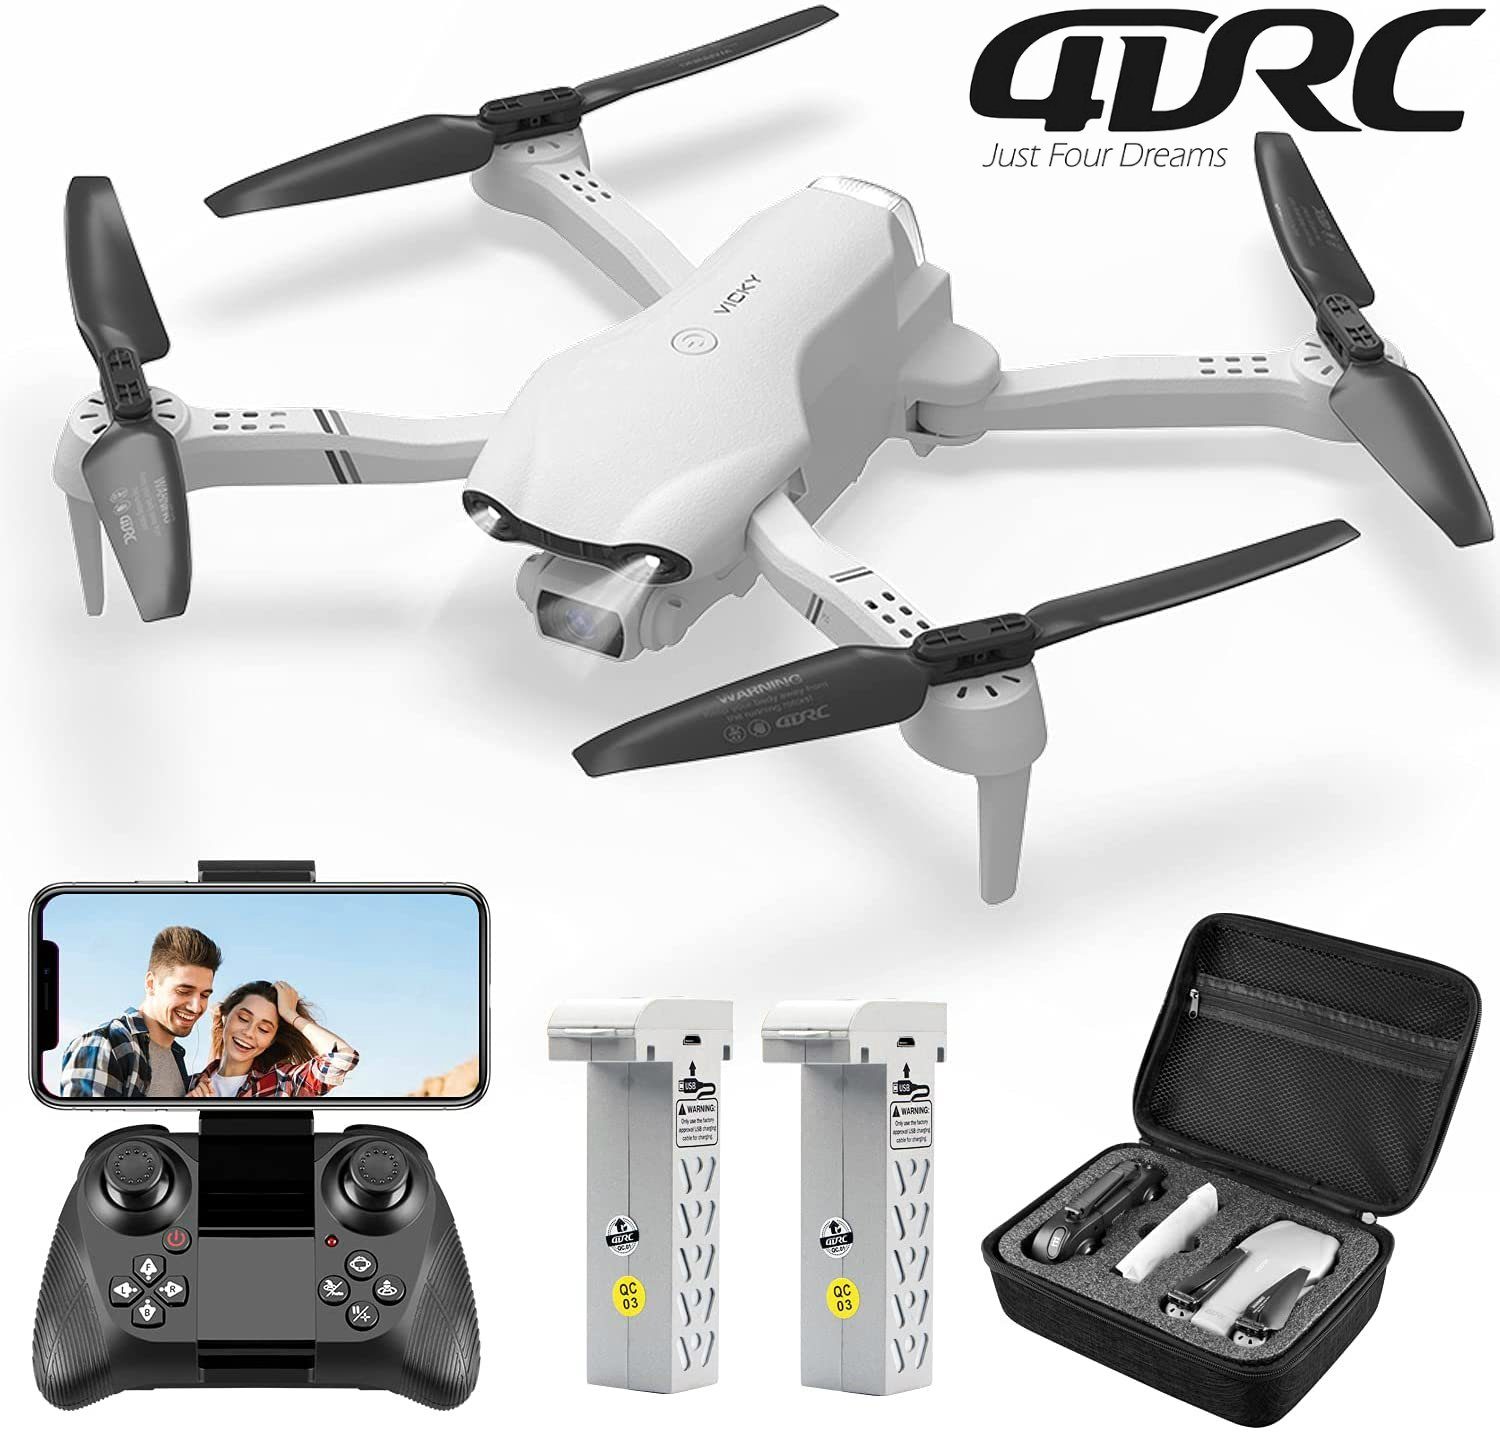 4DRC für Kinder & Flugzeit, HD, Anfänger, Weiß Spielzeug-Drohne 32 FPV-Live-Video, Minuten klappbarer Schwebeflug) (1080P F10, automatischer Quadcopter